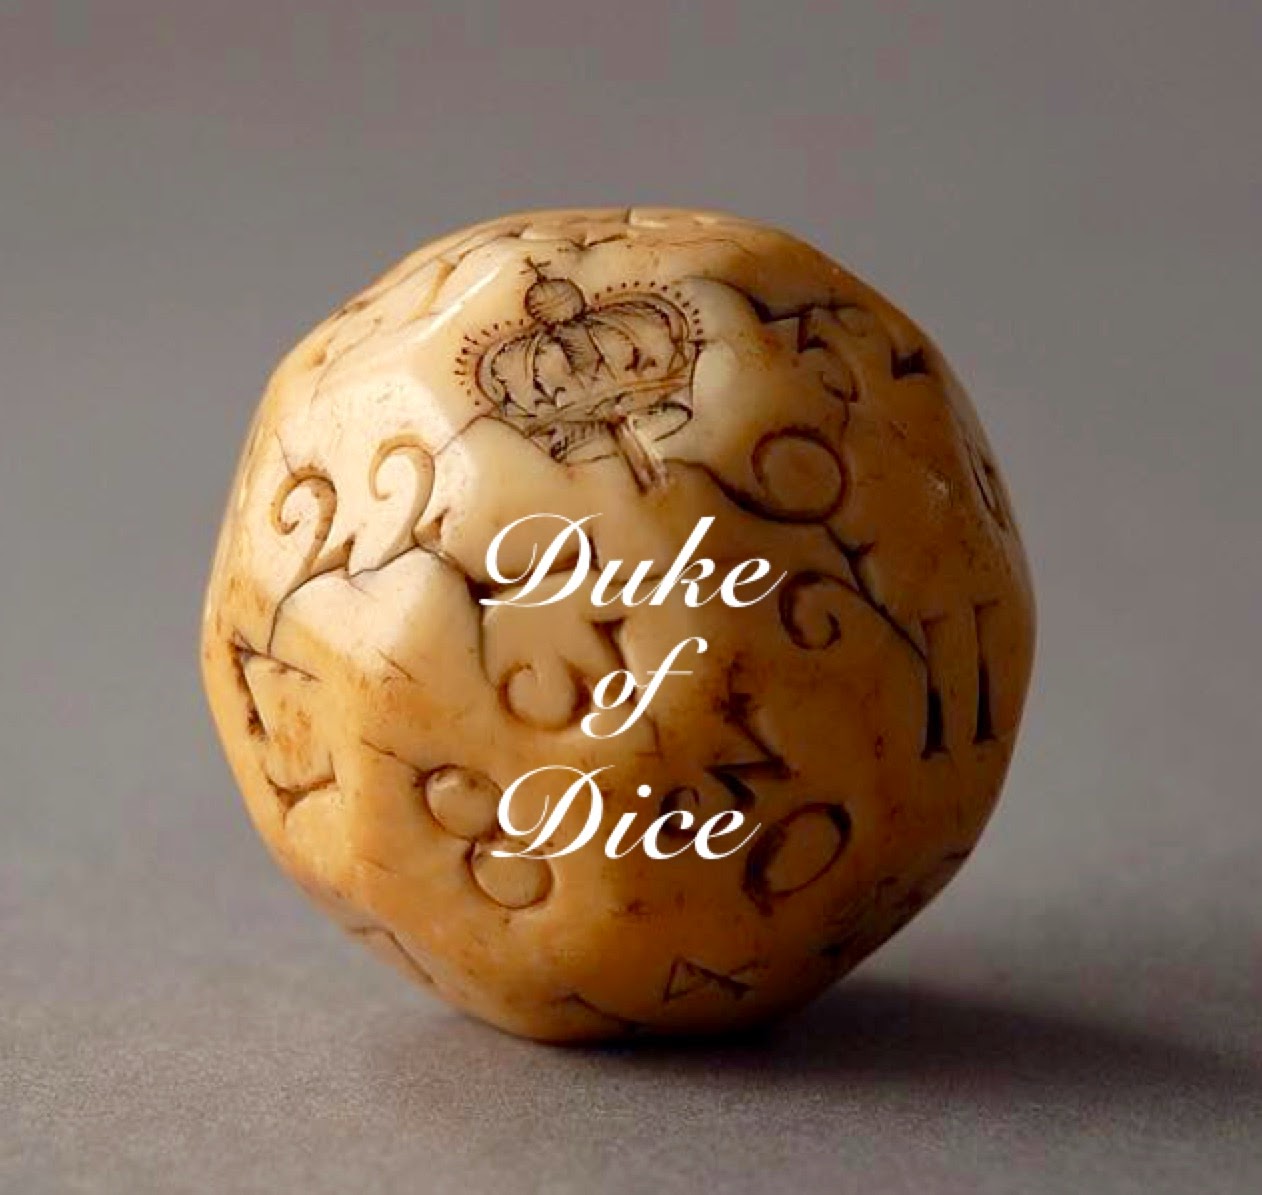 "Duke of Dice" auf facebook: